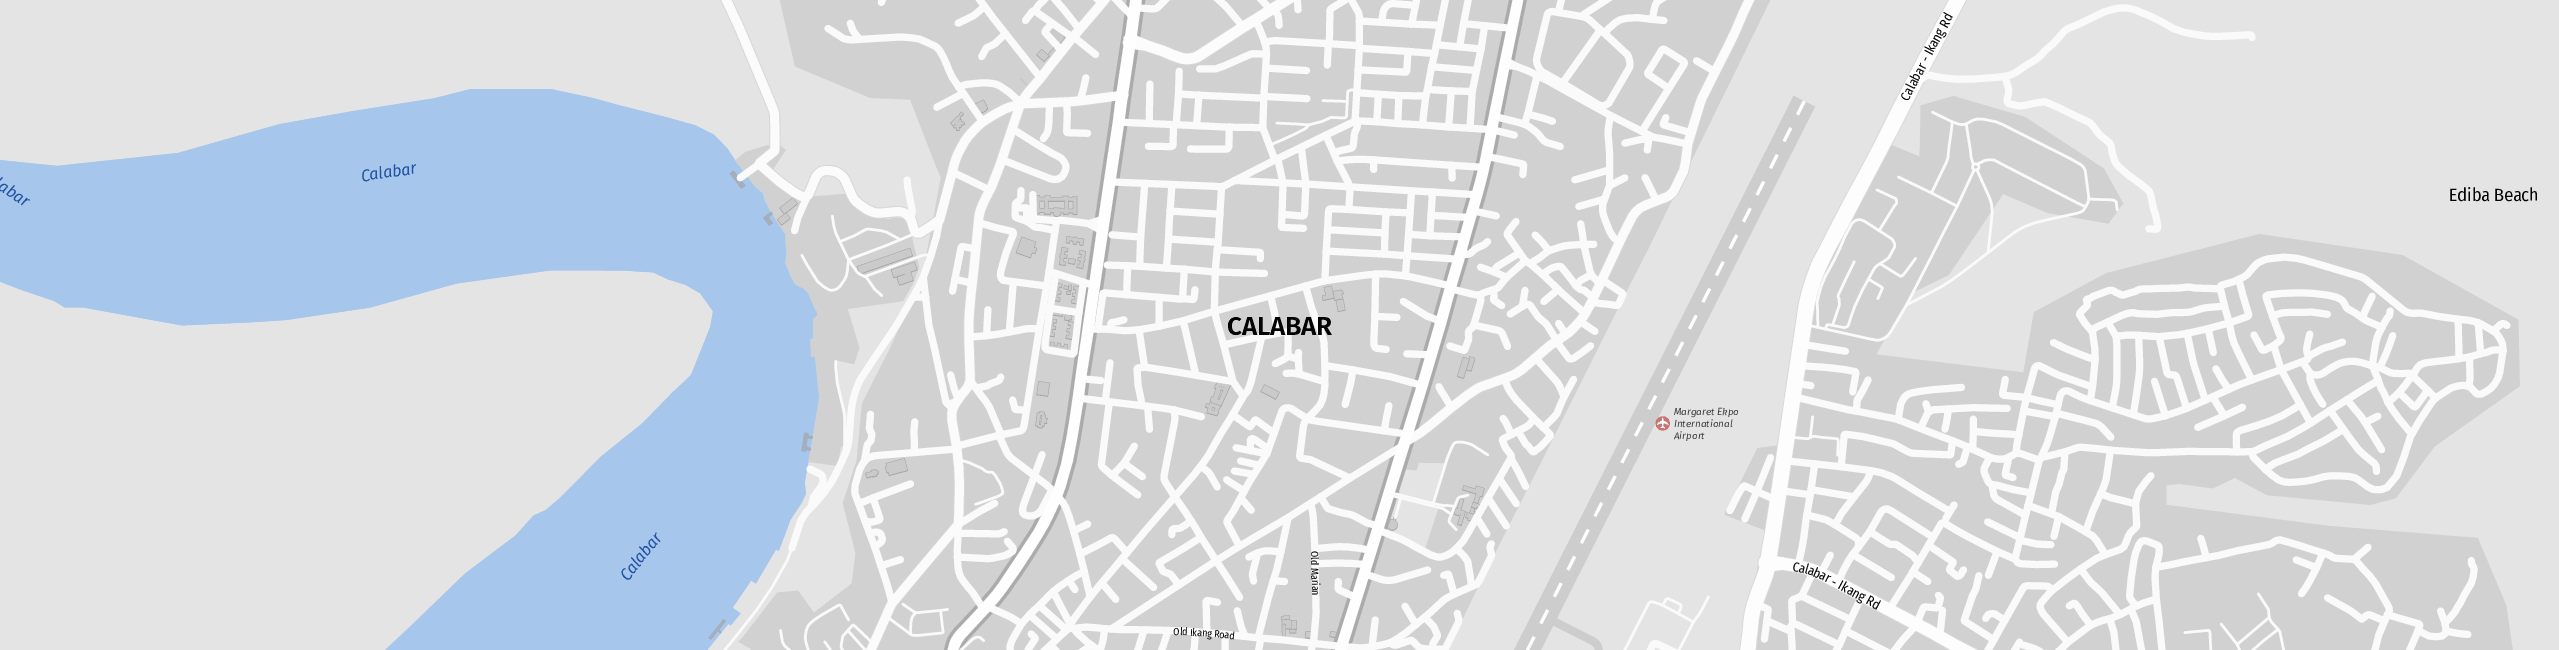 Stadtplan Calabar zum Downloaden.